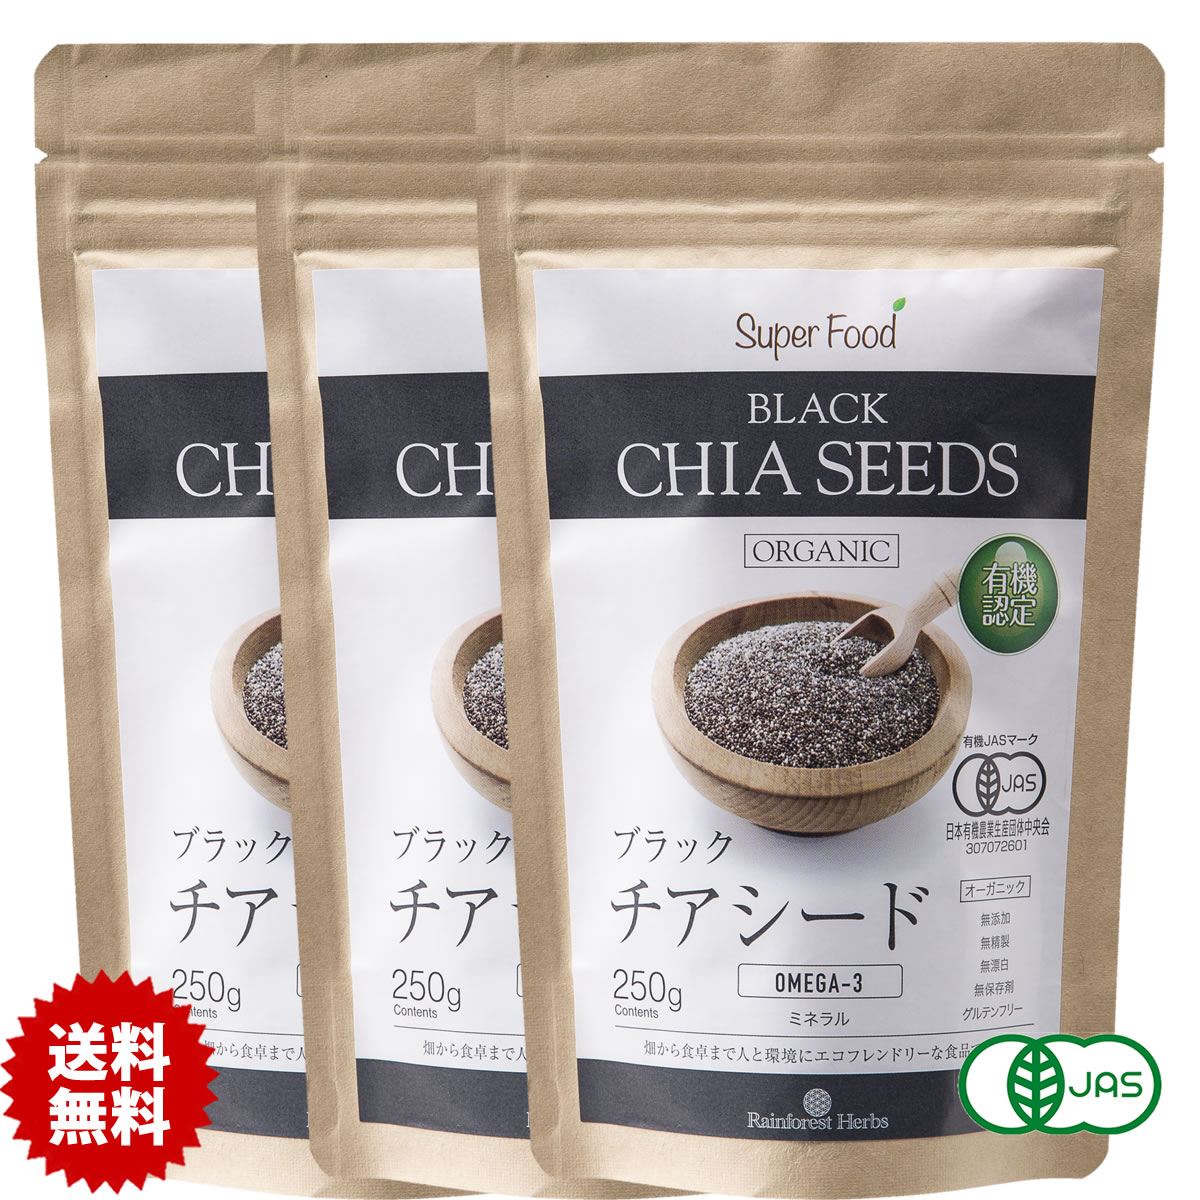 直送商品オーガニック ブラック チアシード 250g 3袋 有機hJAS チヤシード ちあしーど organic black chia seeds